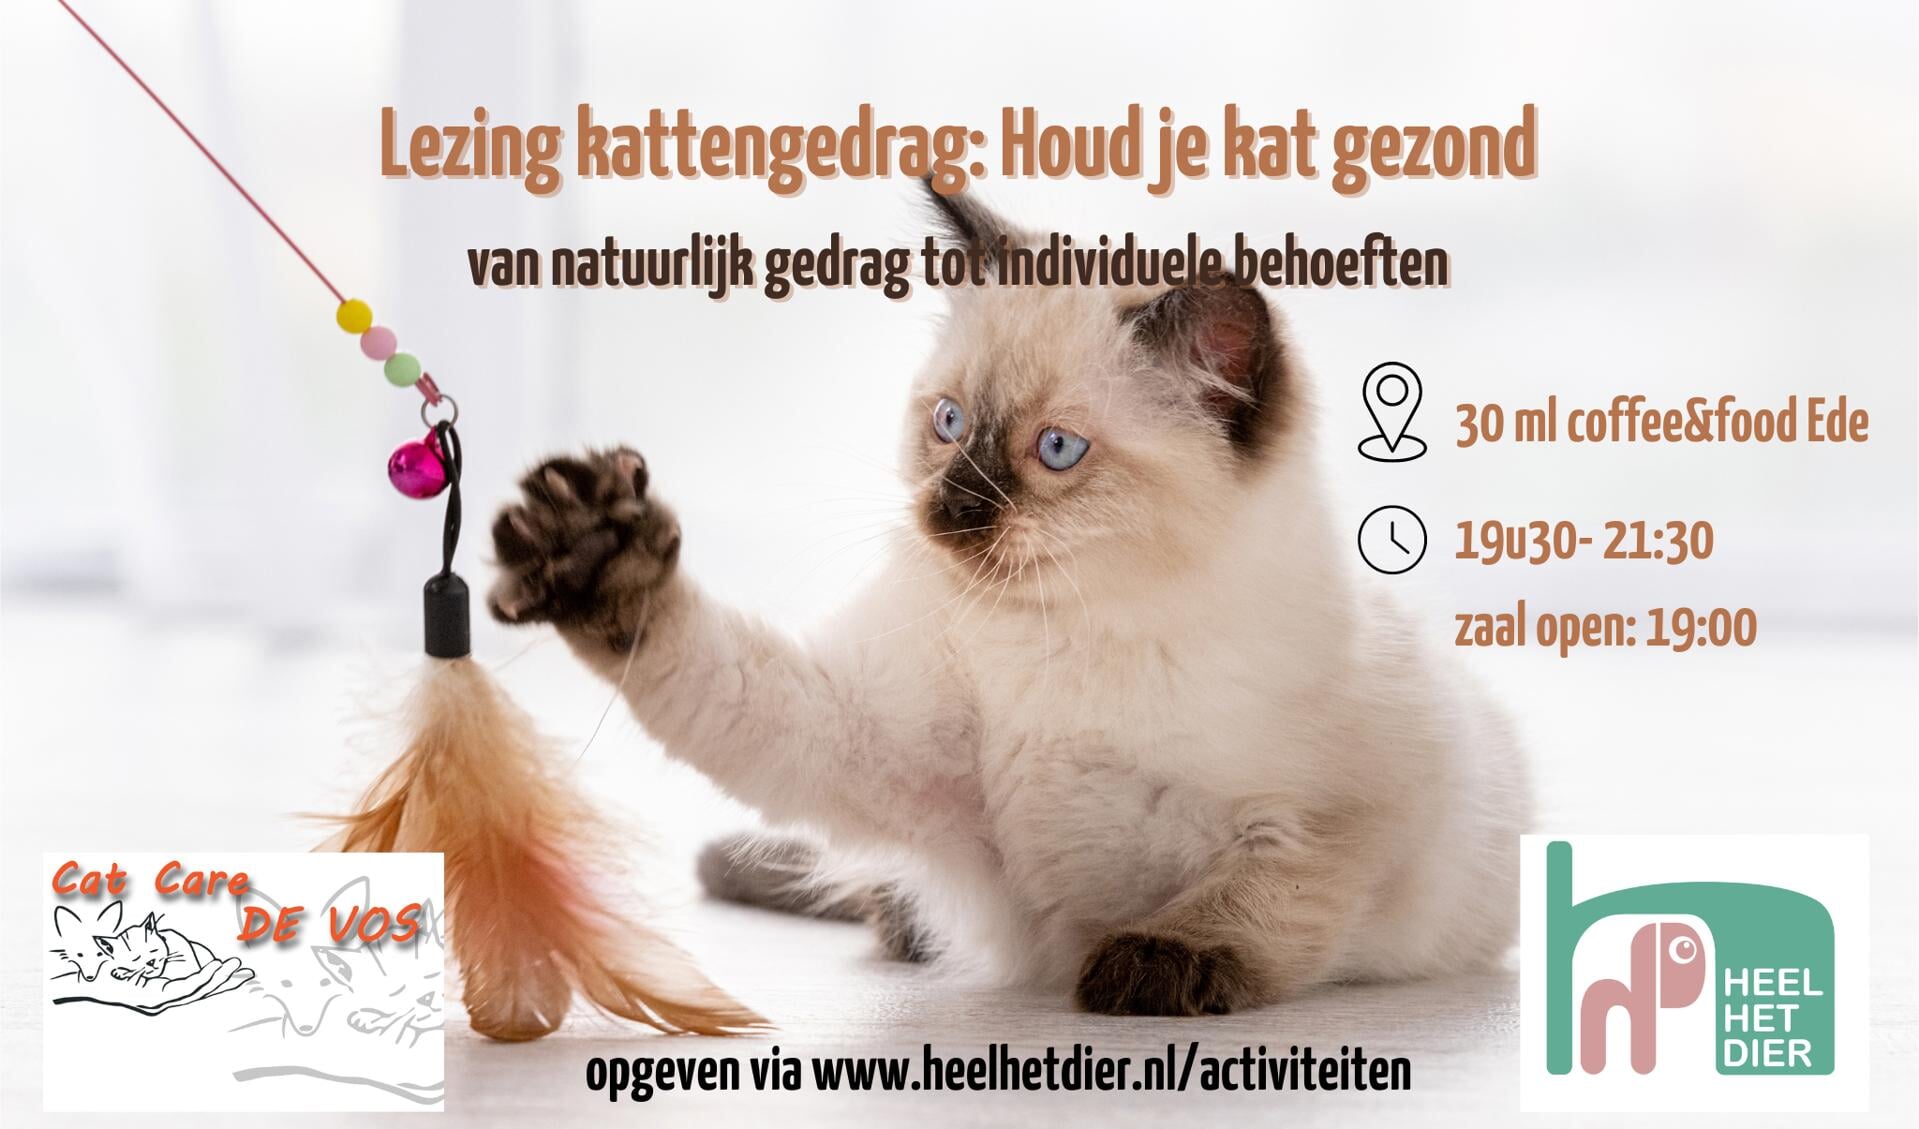 www.heelhetdier.nl www.catcaredevos.nl